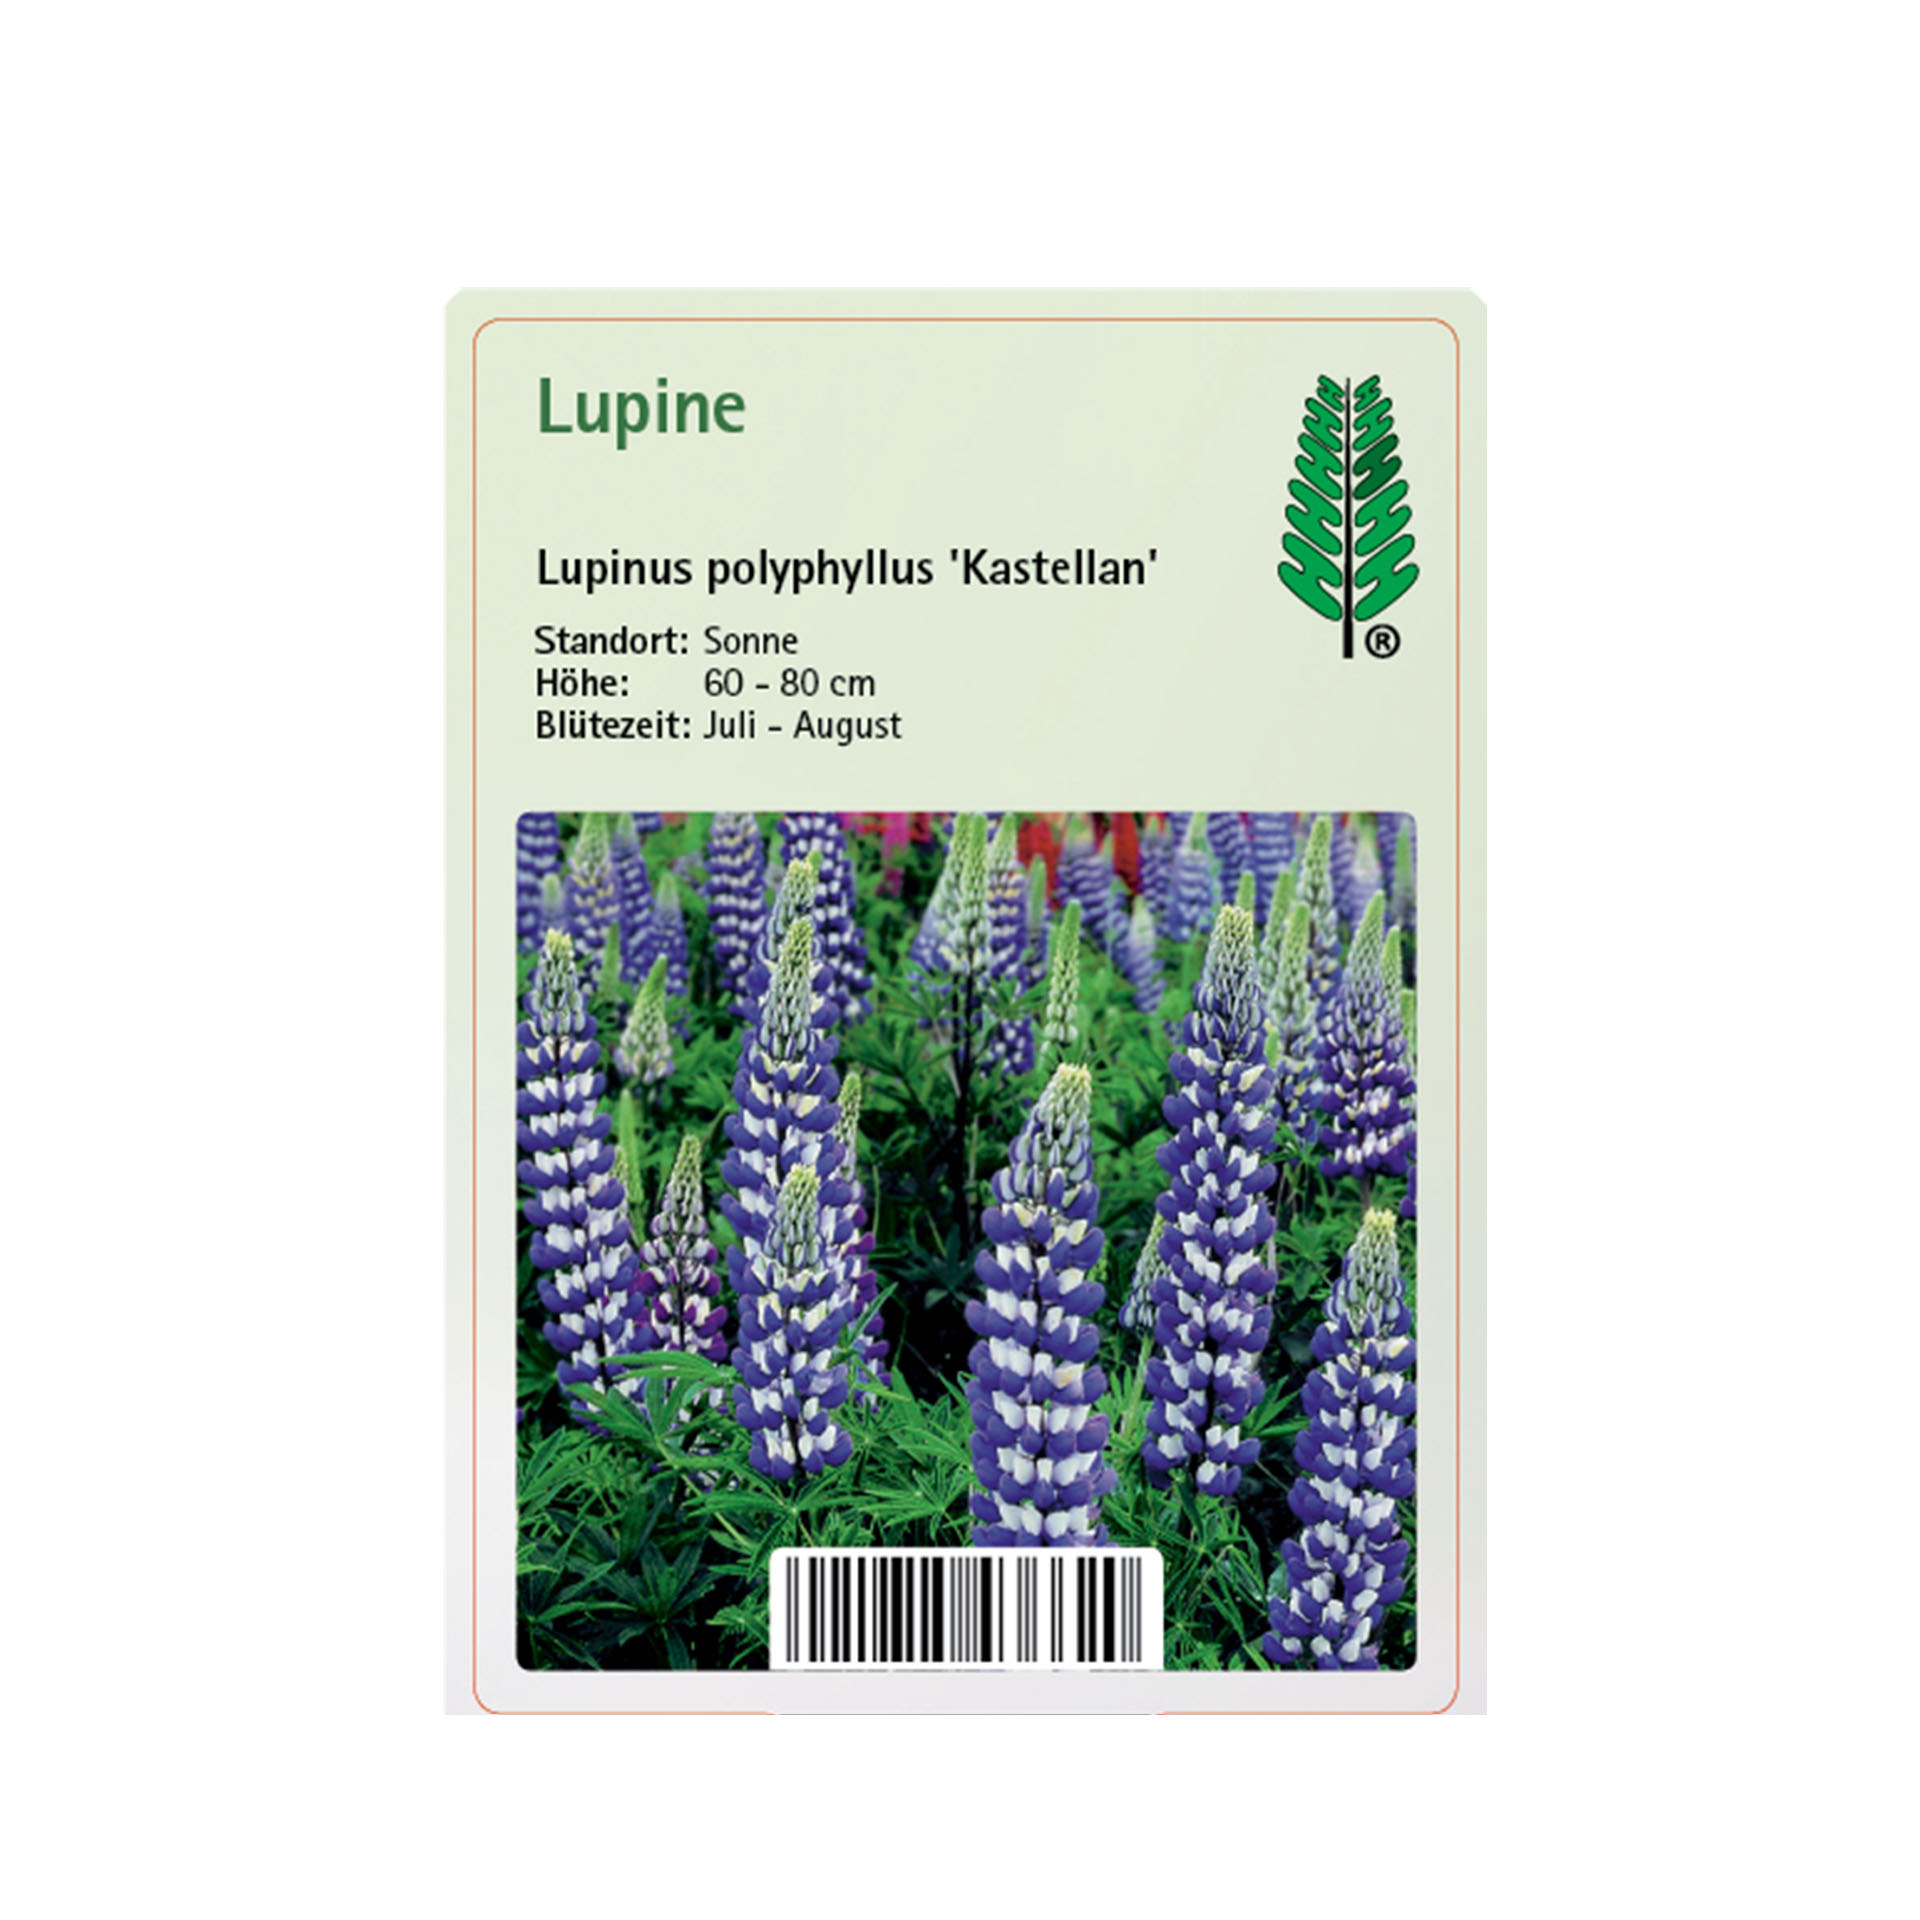 Lupine - Lupinus polyphyllus 'Kastellan'